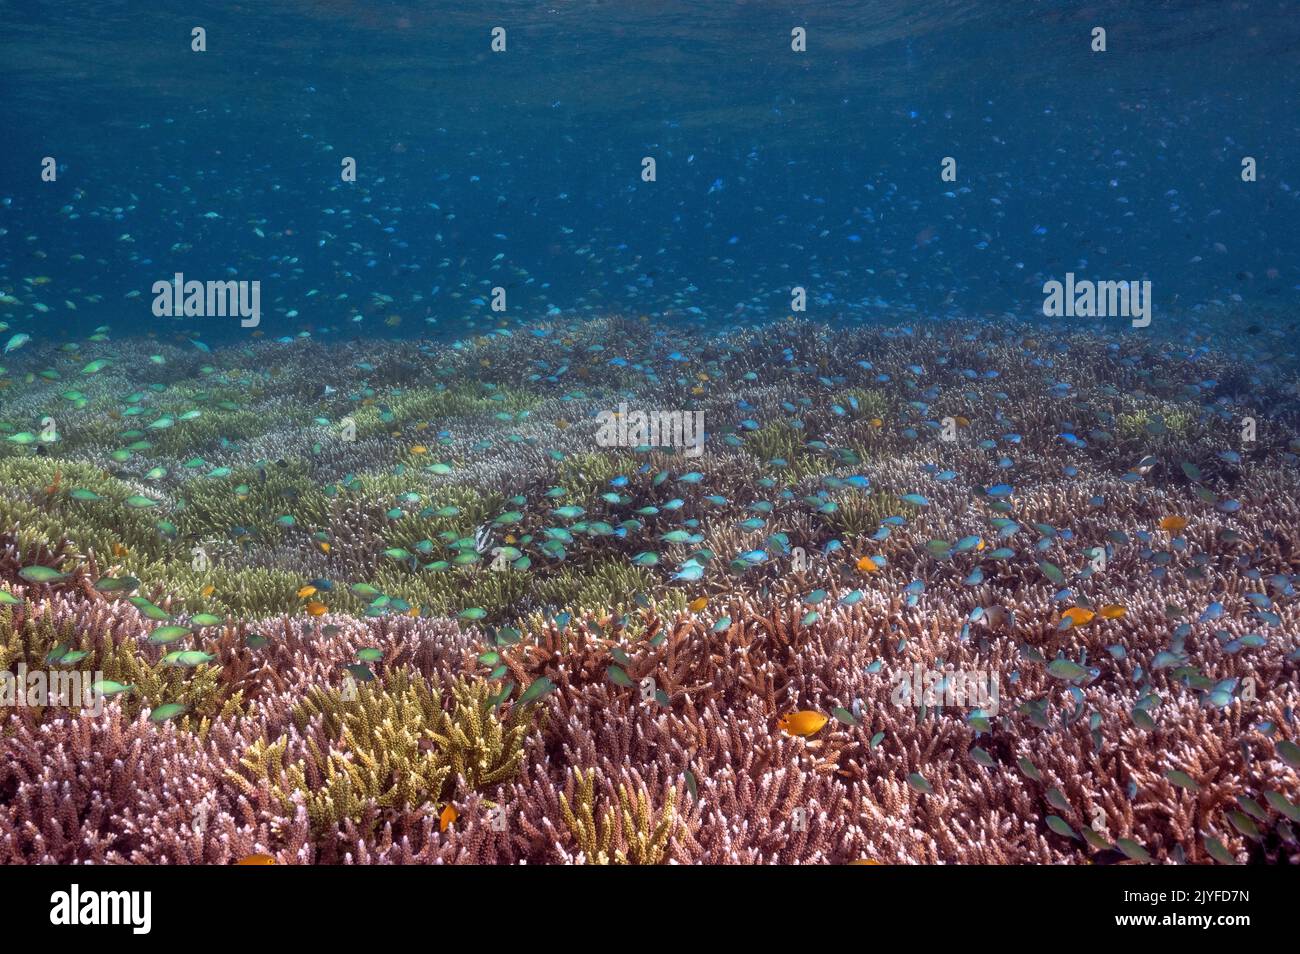 Récif pittoresque avec des damgels bleus, Chromis viridis, au-dessus des coraux pierreux Acrapora, Raja Ampat Indonésie. Banque D'Images